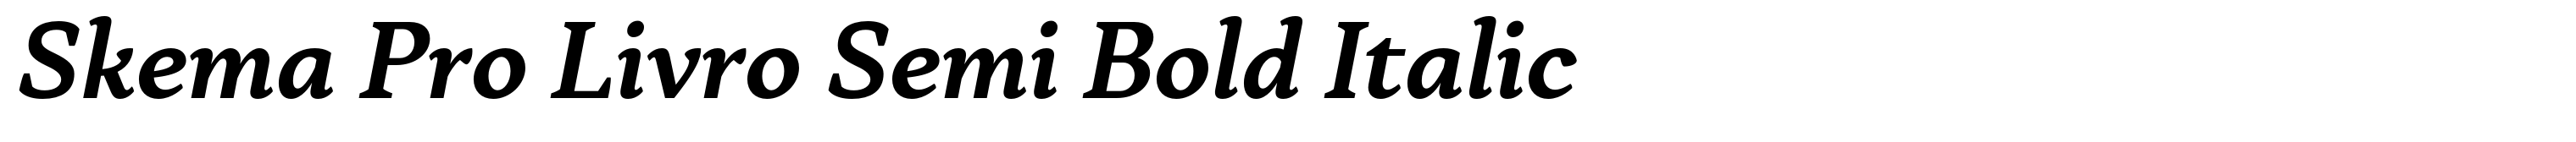 Skema Pro Livro Semi Bold Italic